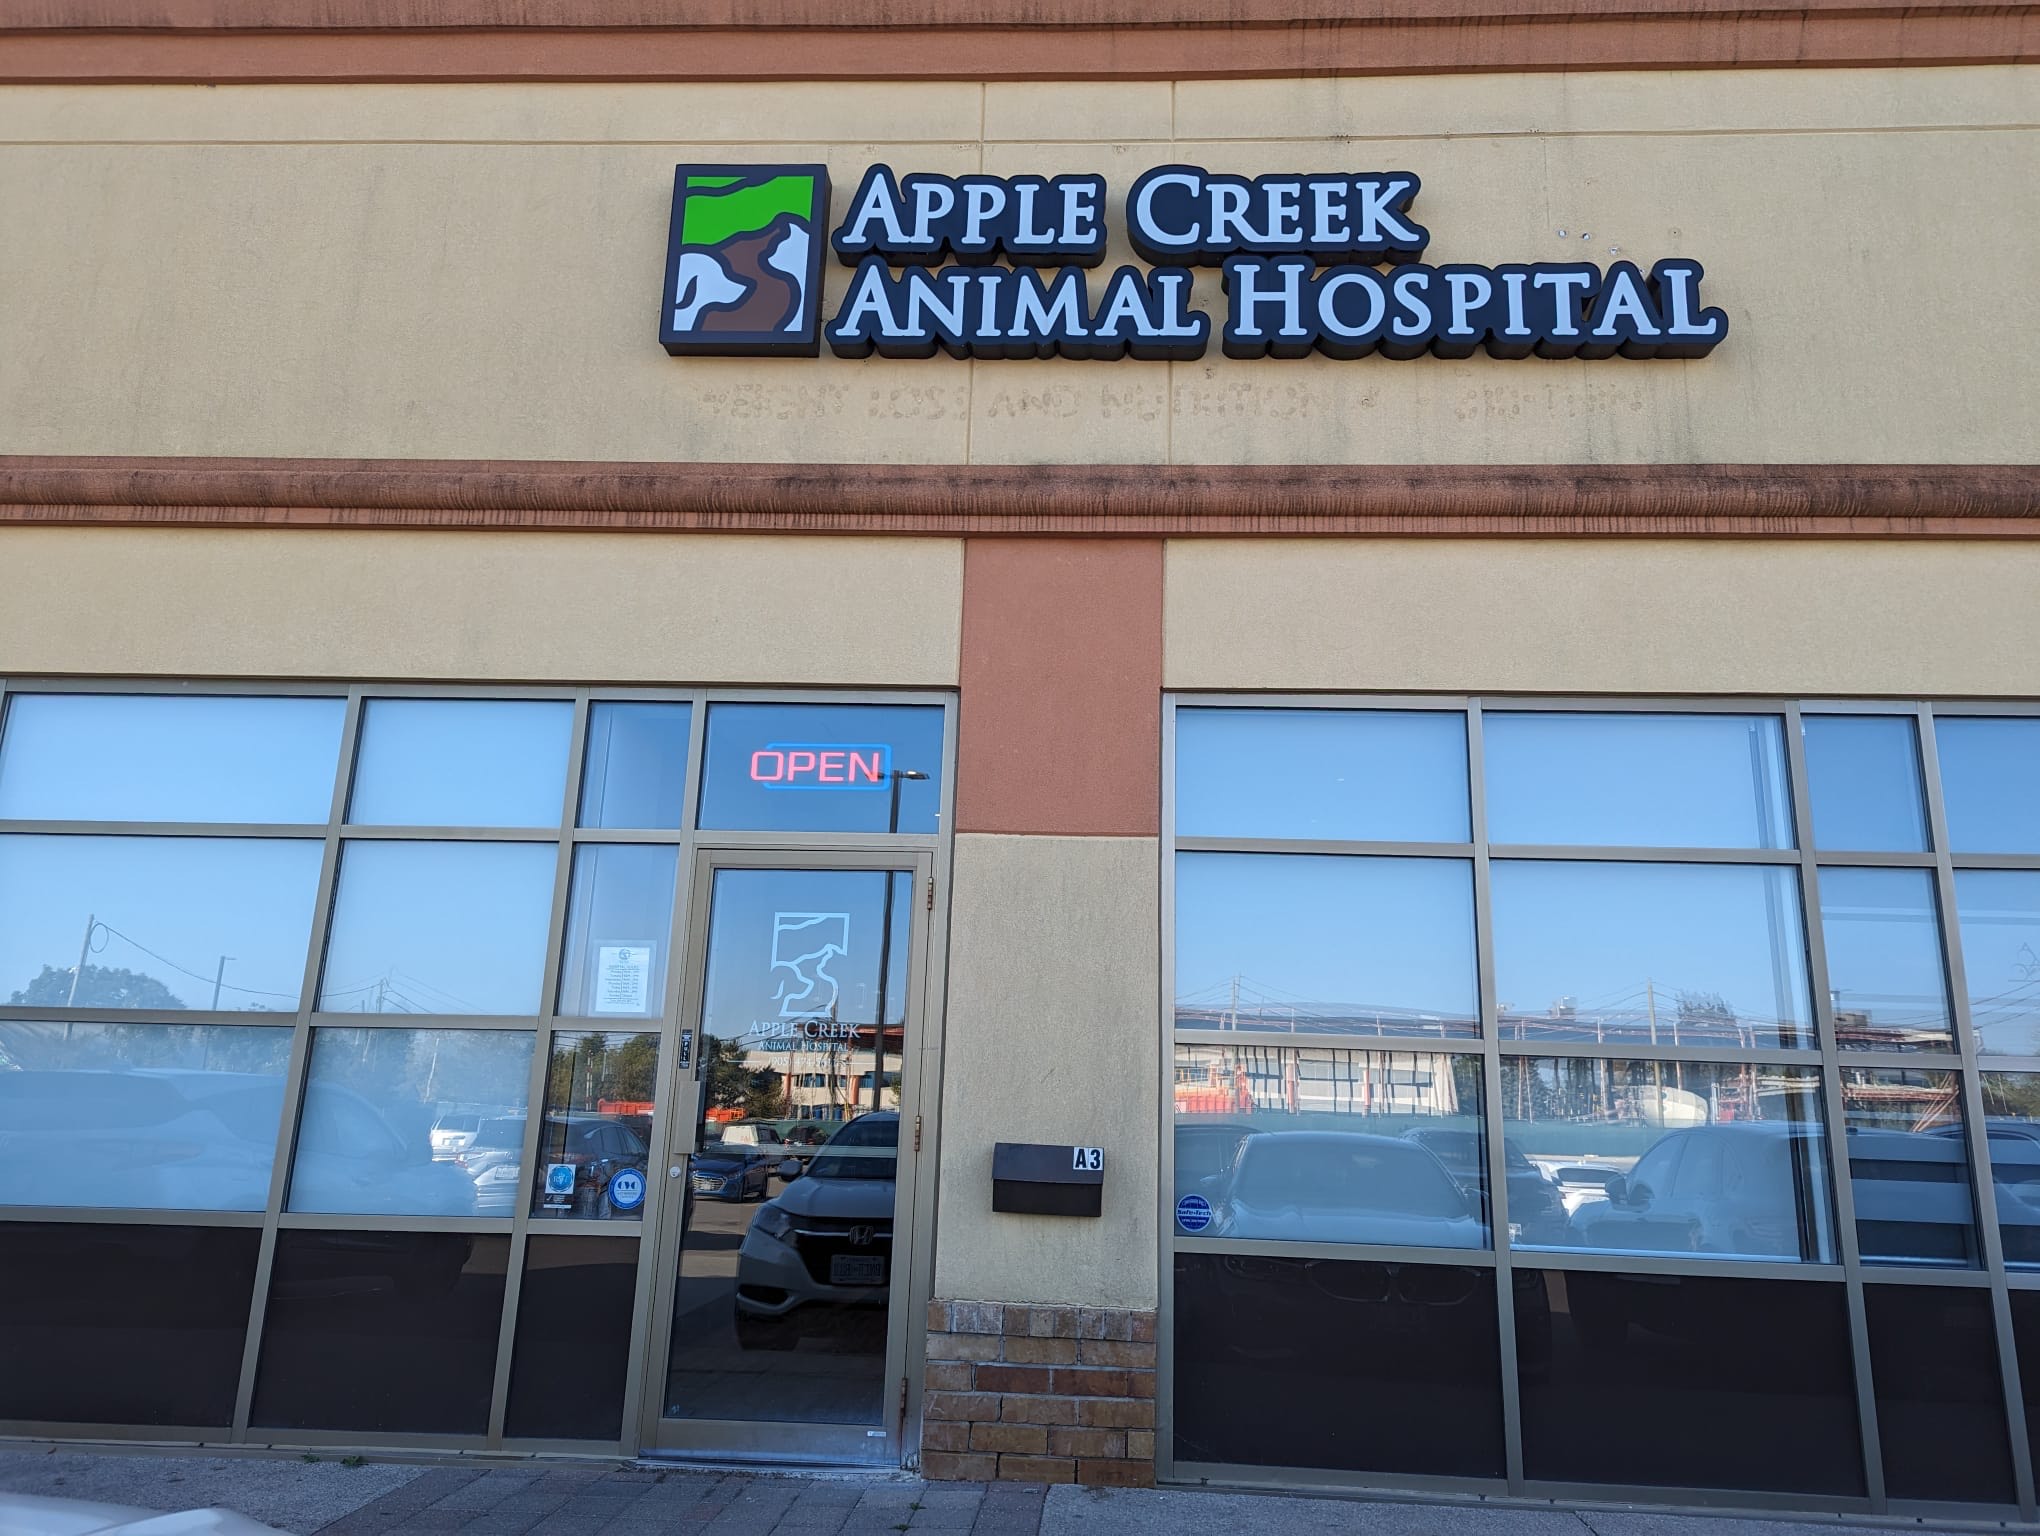 Apple Creek Animal Hospital